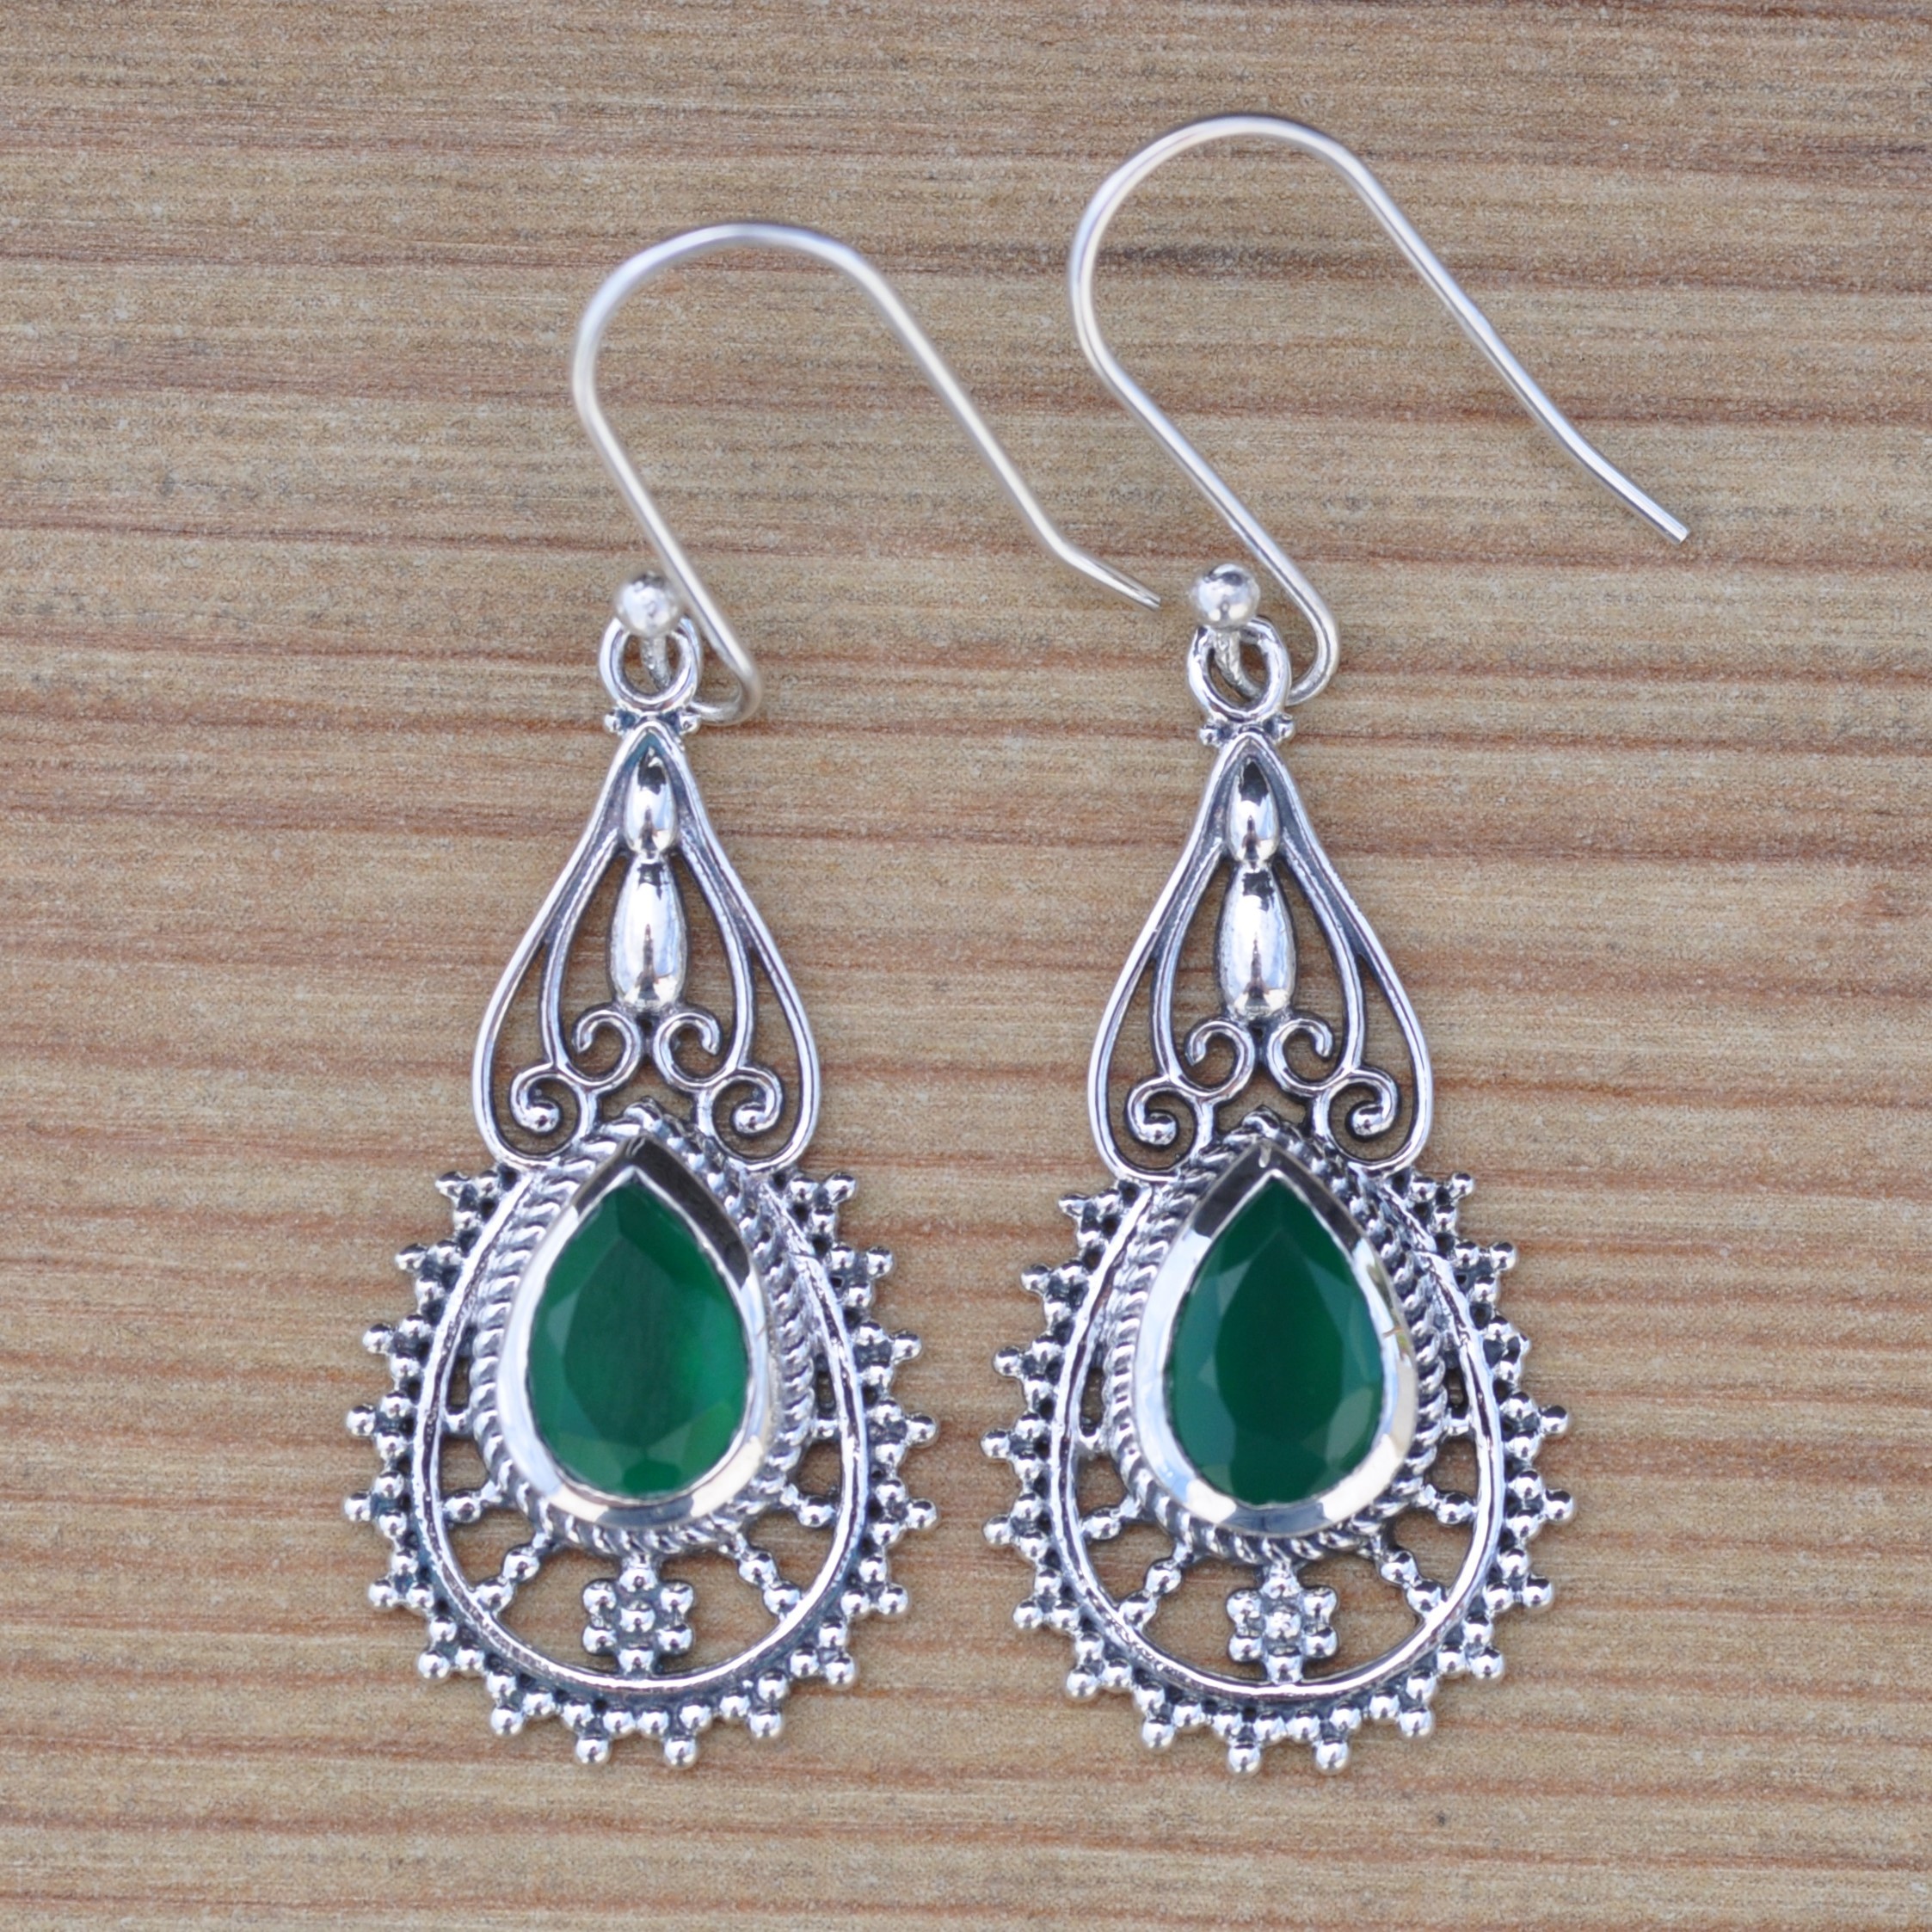 NEW ! Boucles d'oreilles ciselées en argent et pierre Agate verte (vert)